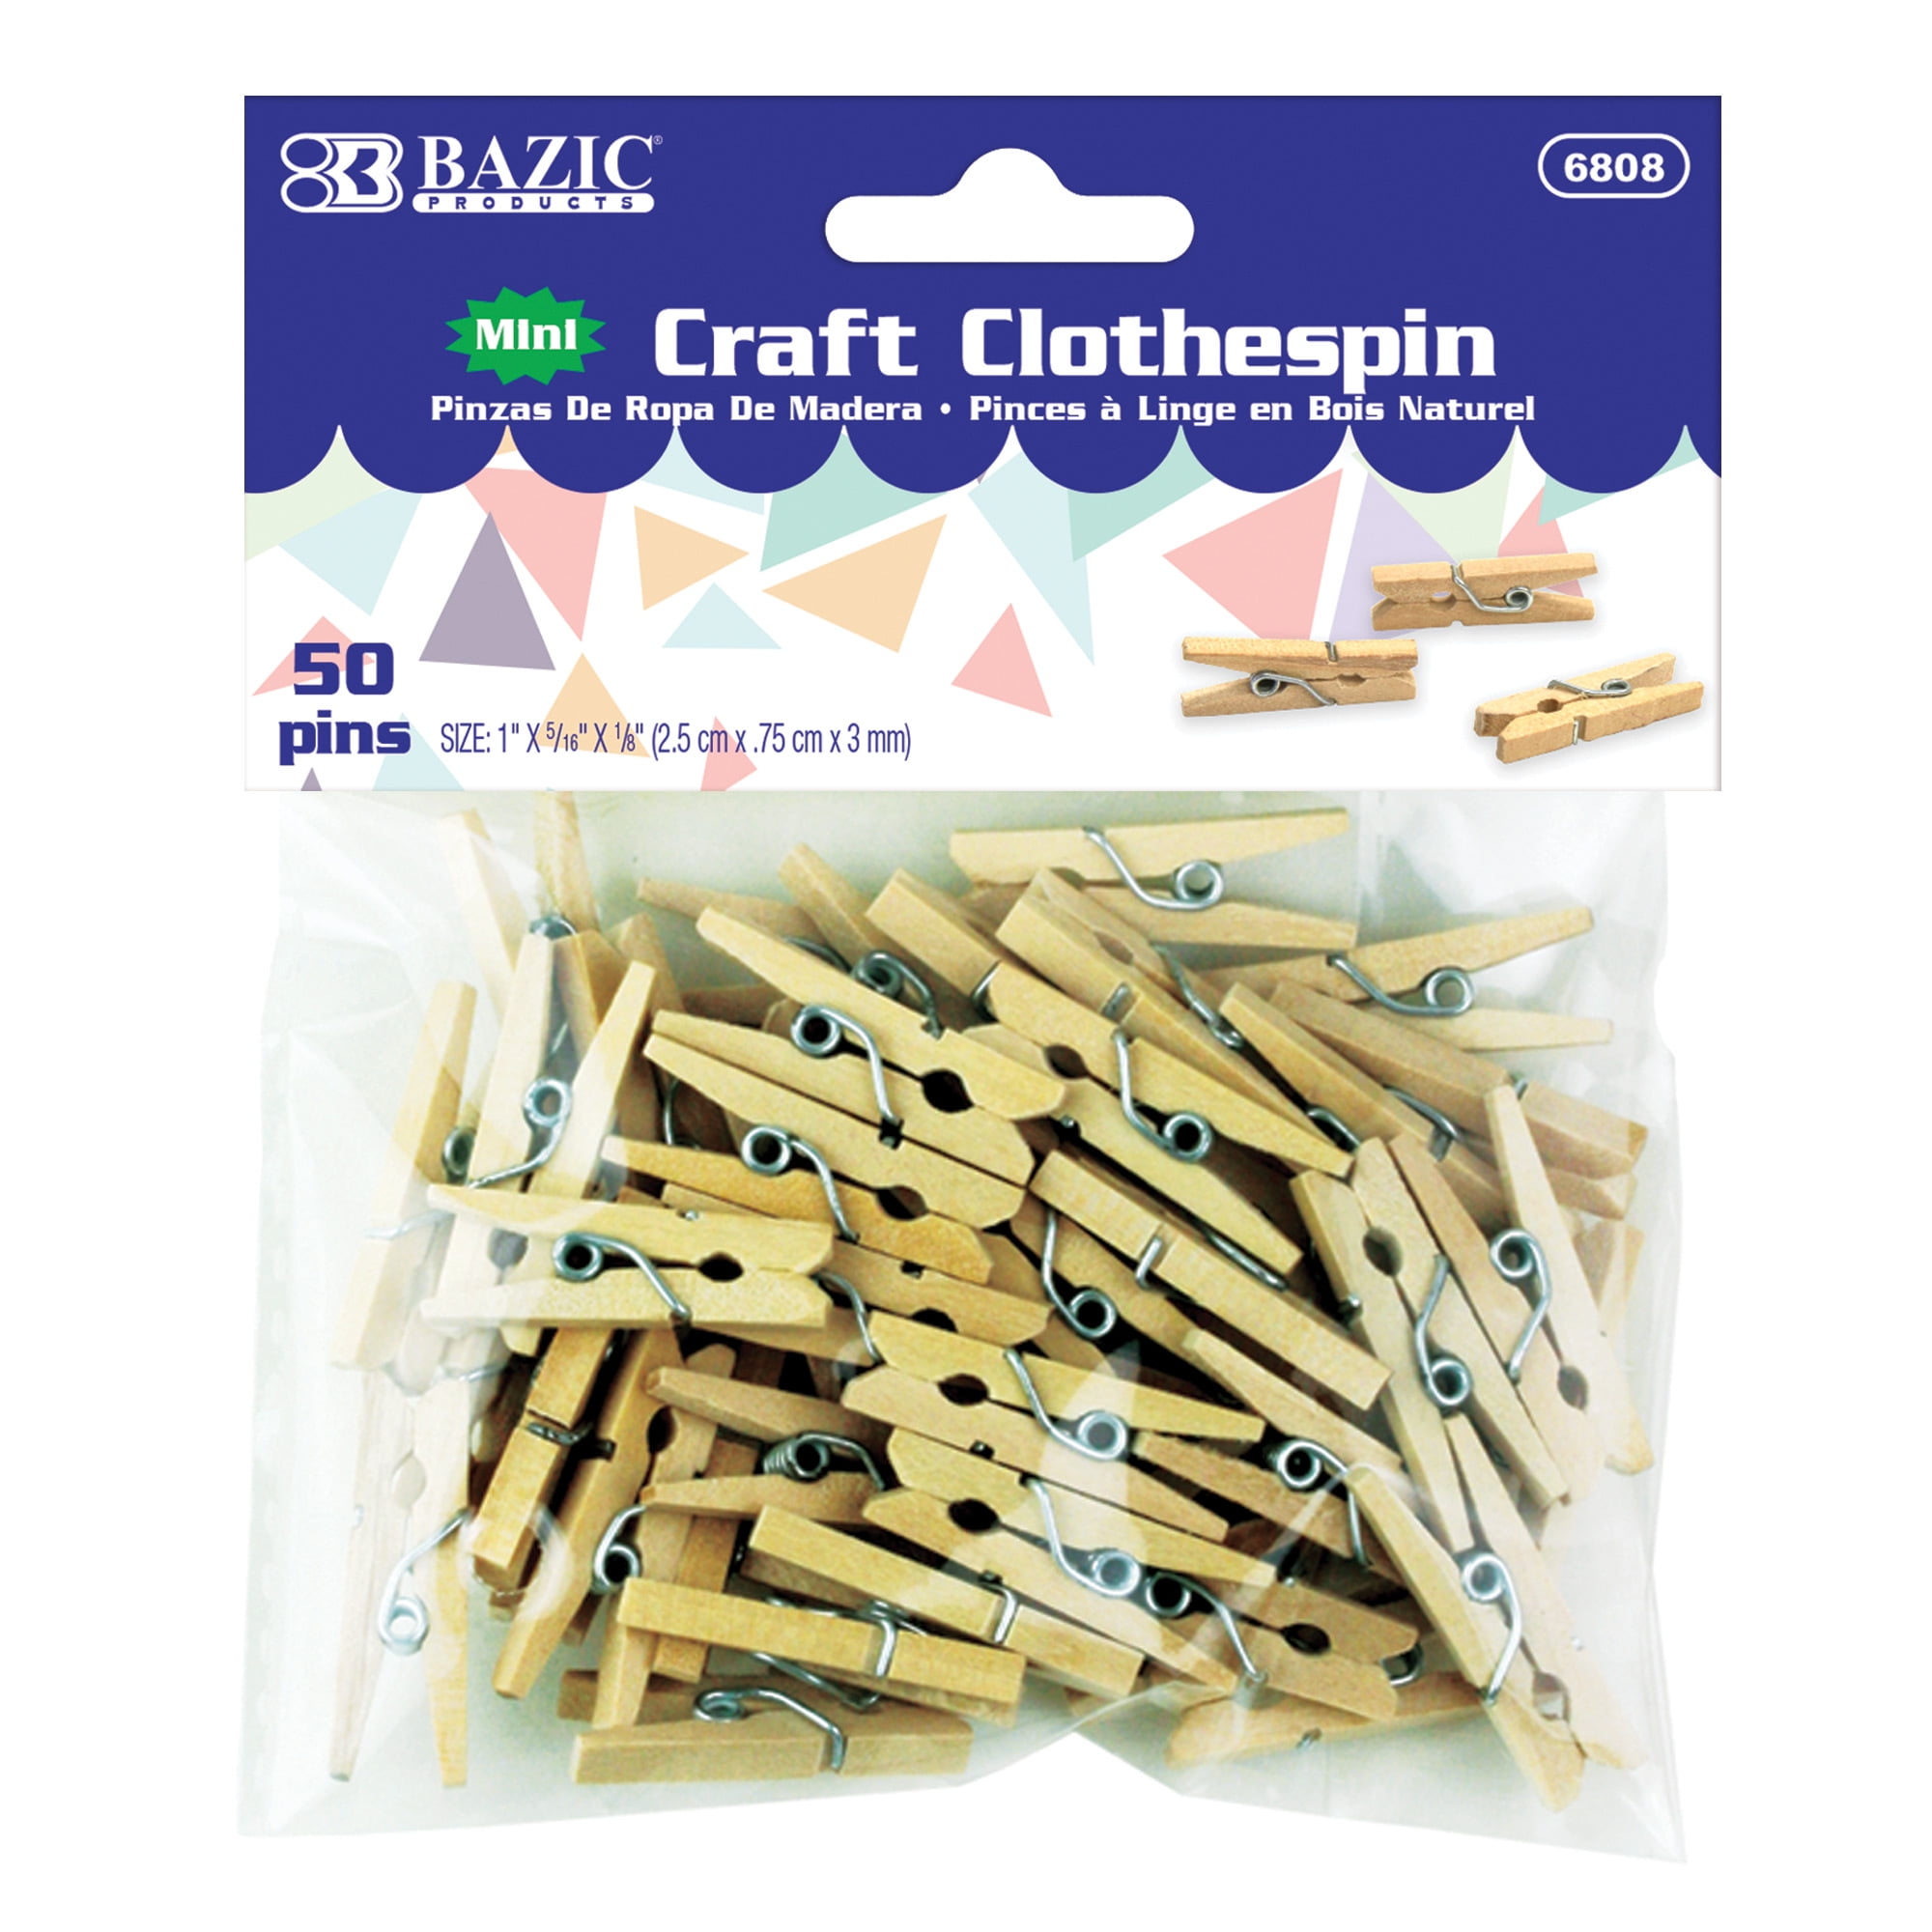 BAZIC Clothes Pin Mini 1, Natural Wood Clothespins (50/Pack), 1